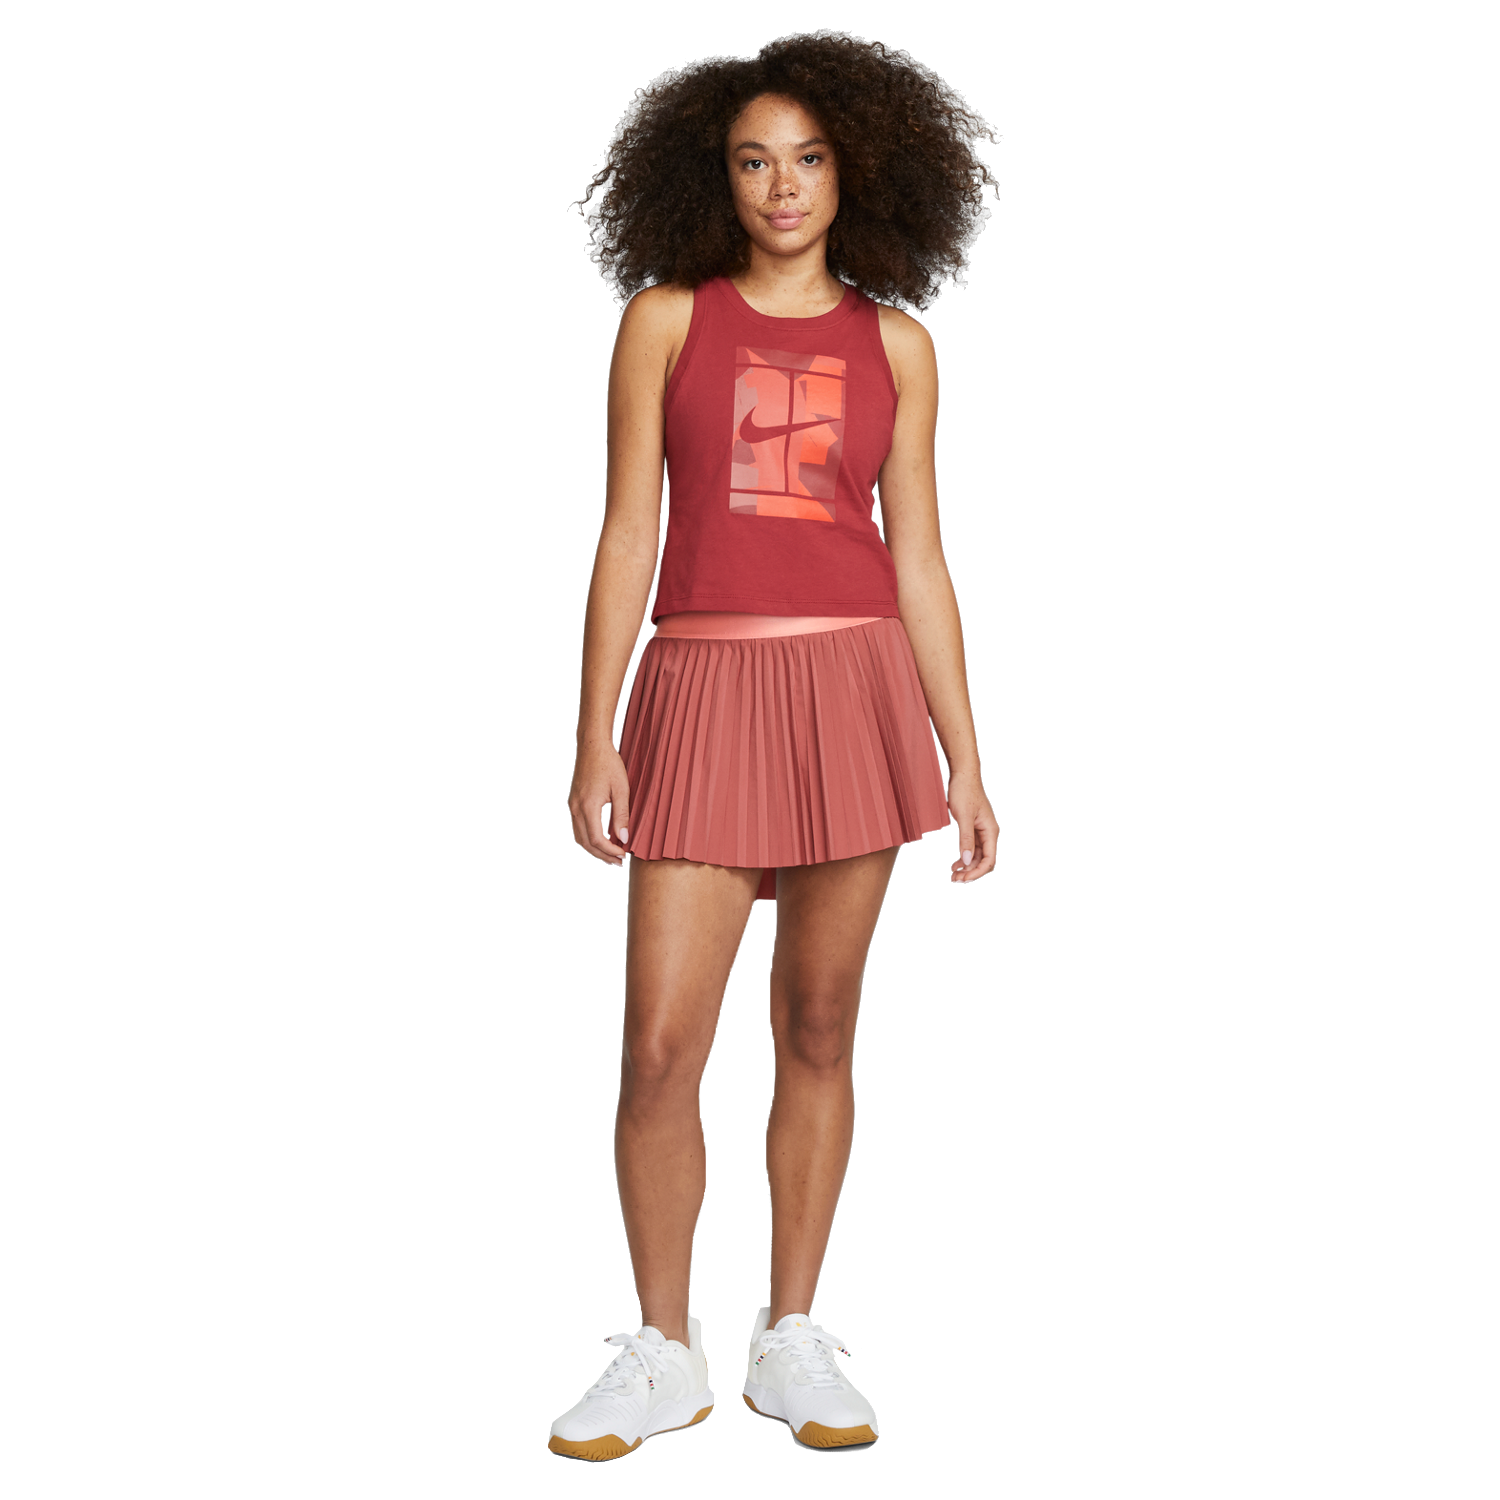 Nike NikeCourt Dri-FIT Advantage Pleated Tennis Skirt W - Black